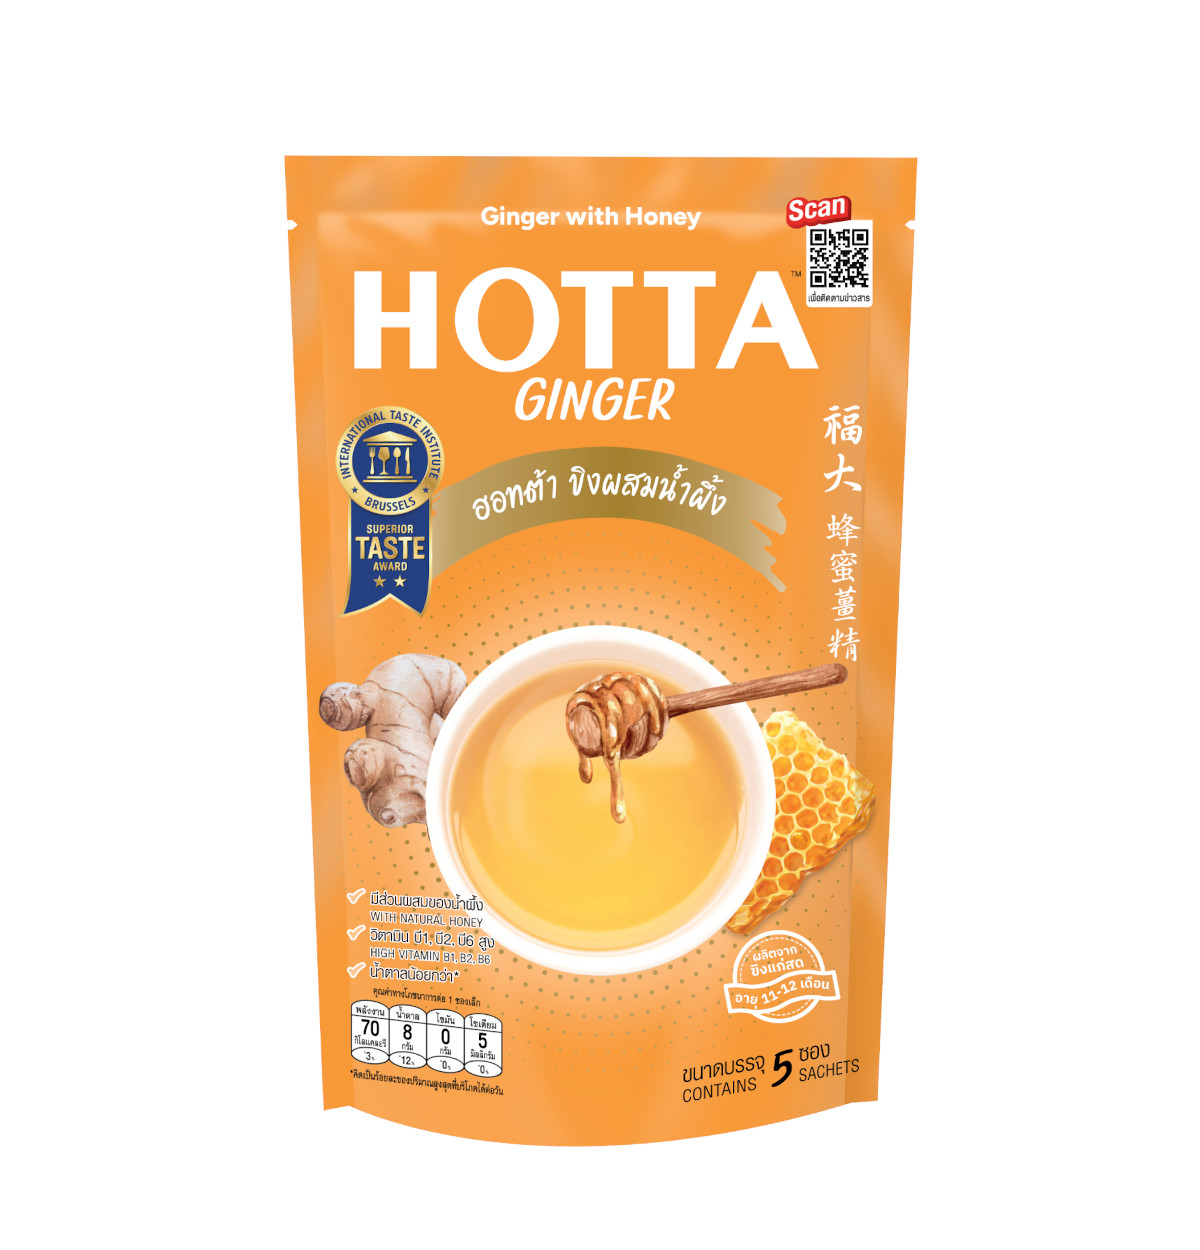 HOTTA Original Ginger with Honey Instant Ginger 18g.x5 Sachets